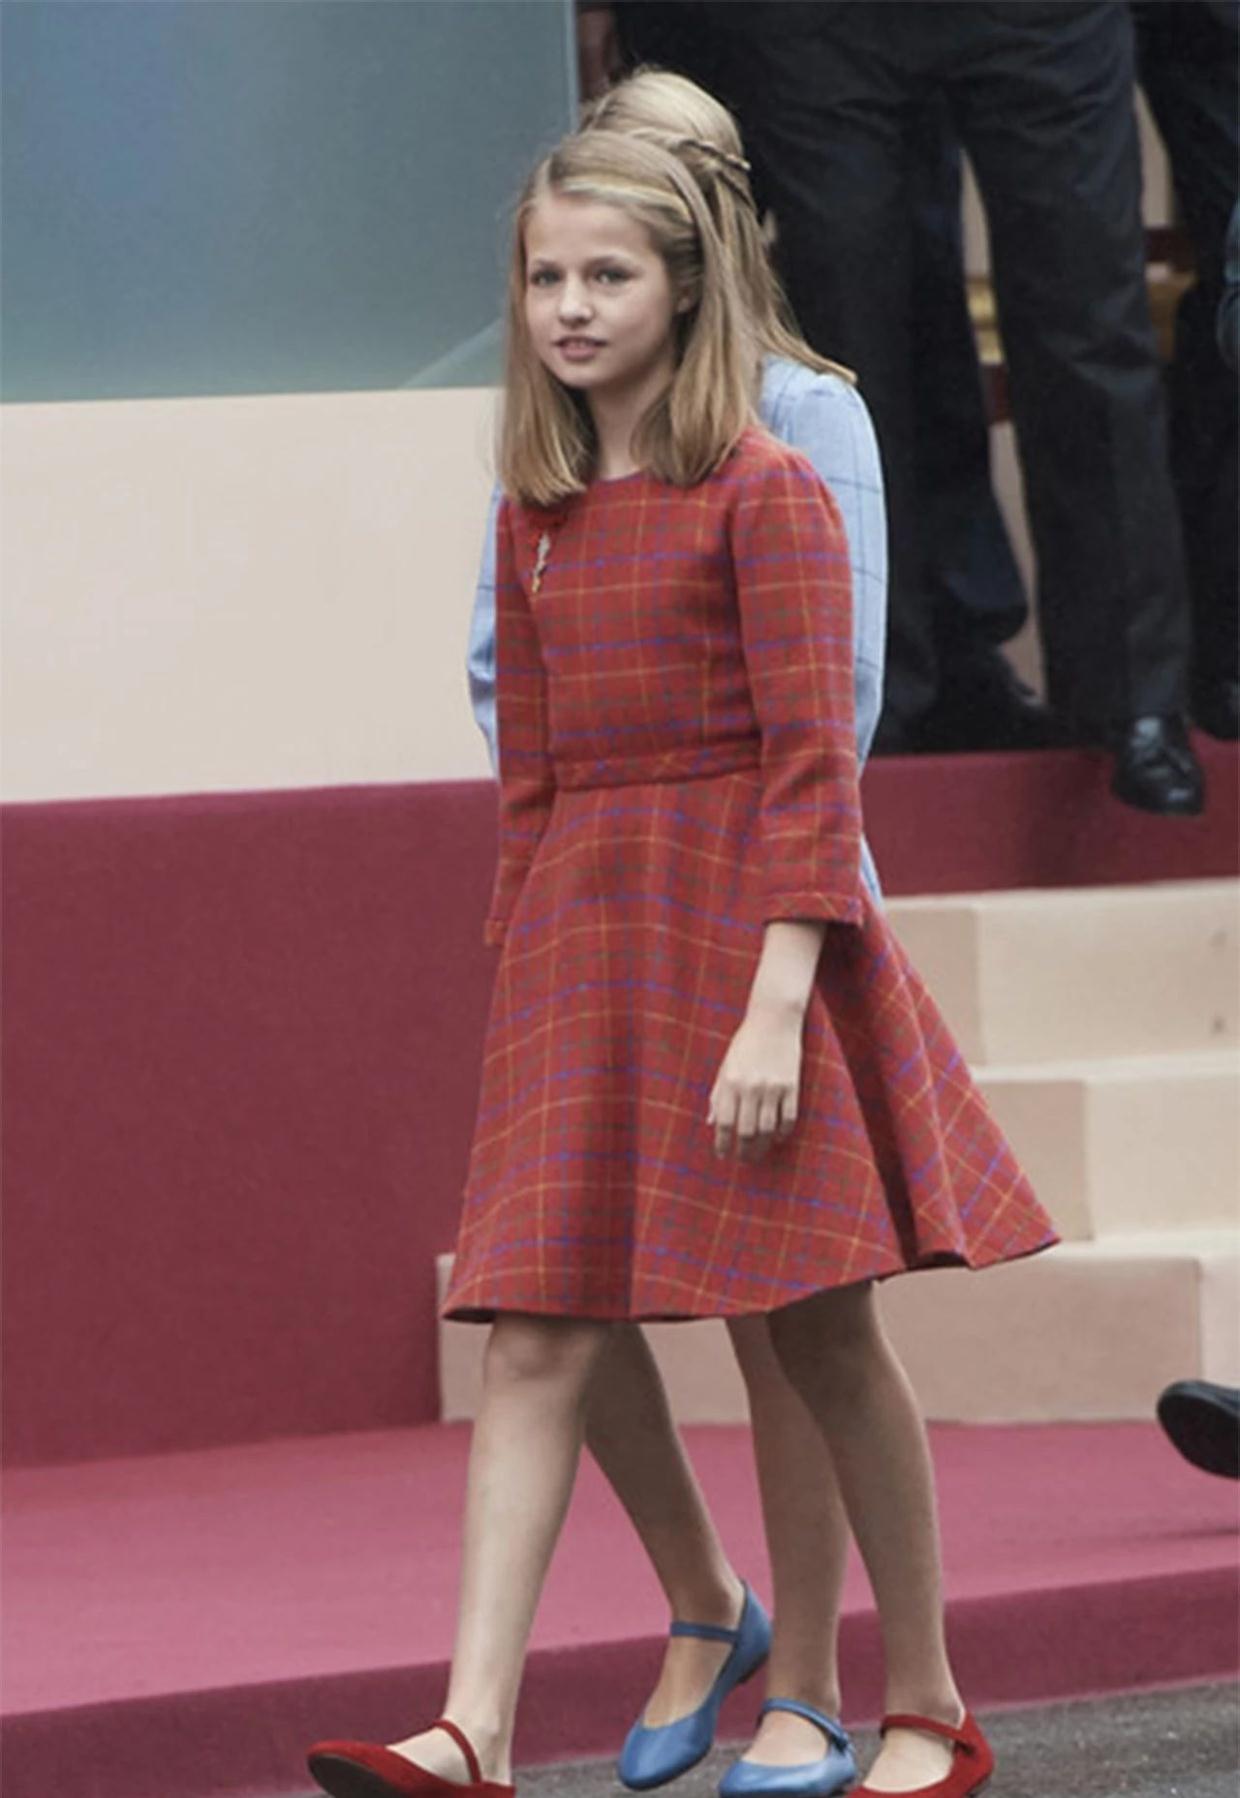 西班牙公主莱昂诺尔真会穿,玫红色连衣裙青春靓丽,活泼可爱